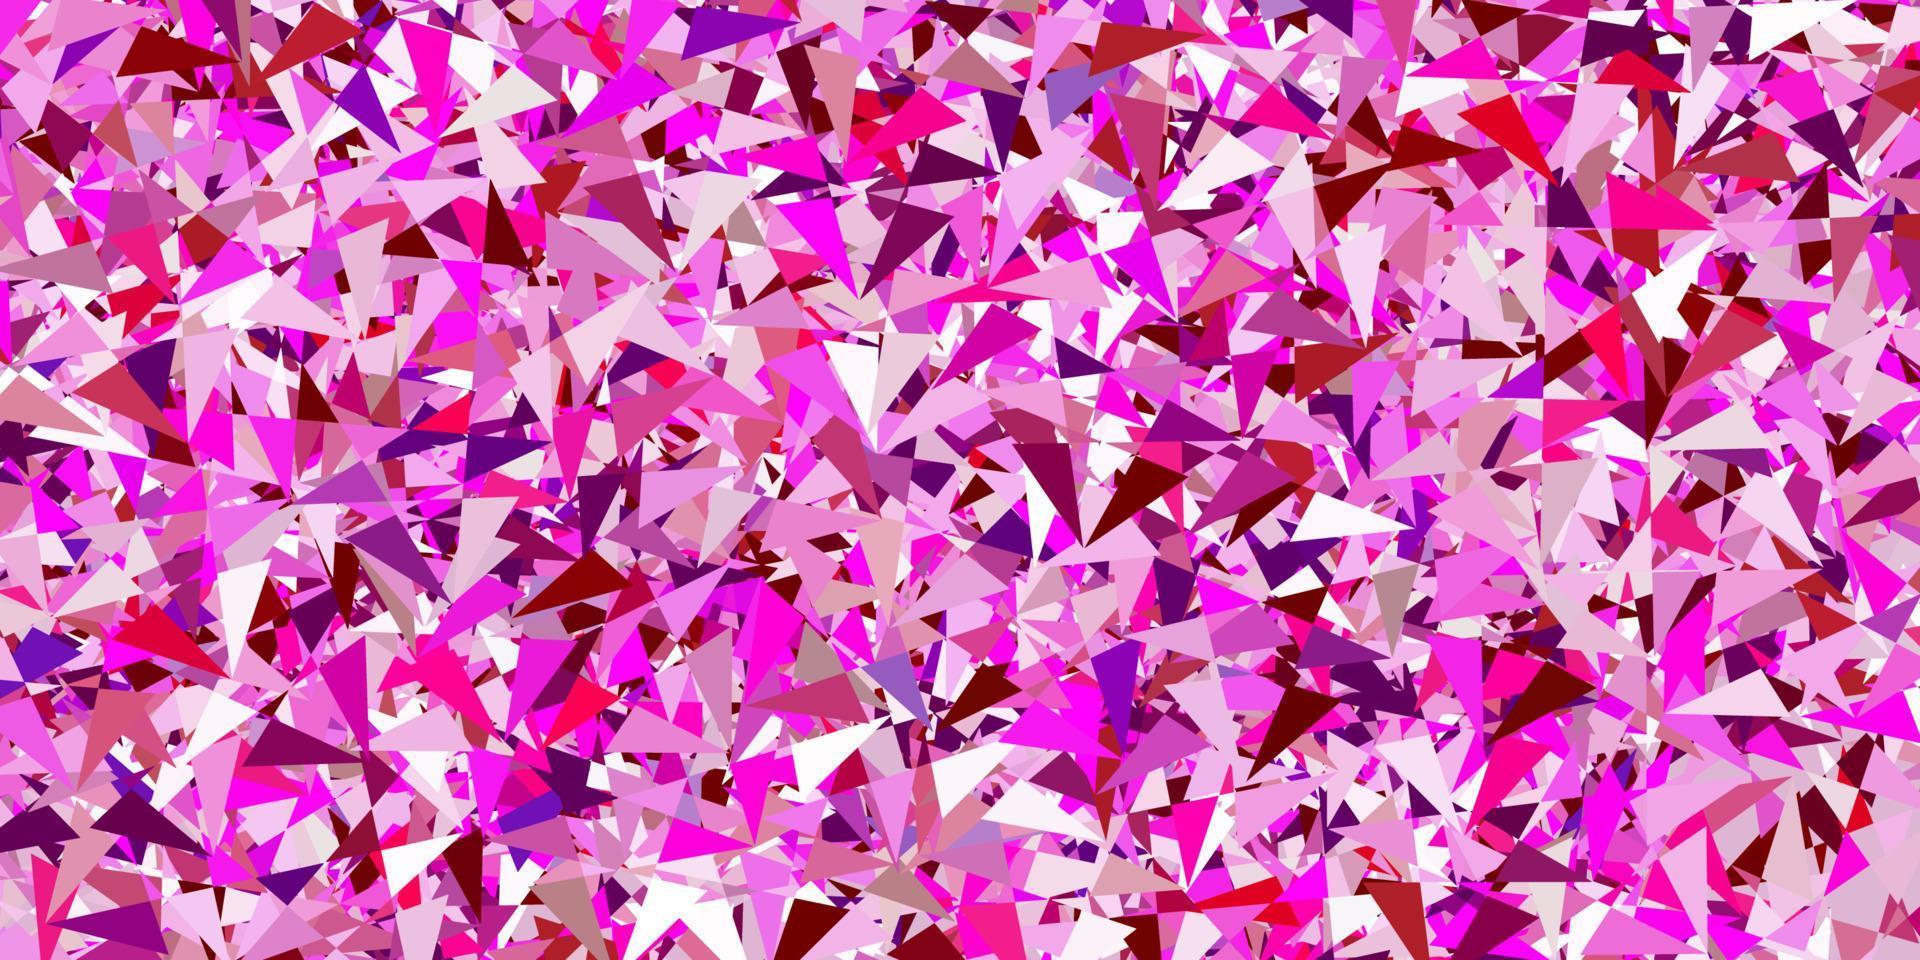 sfondo vettoriale rosa chiaro con triangoli, linee.